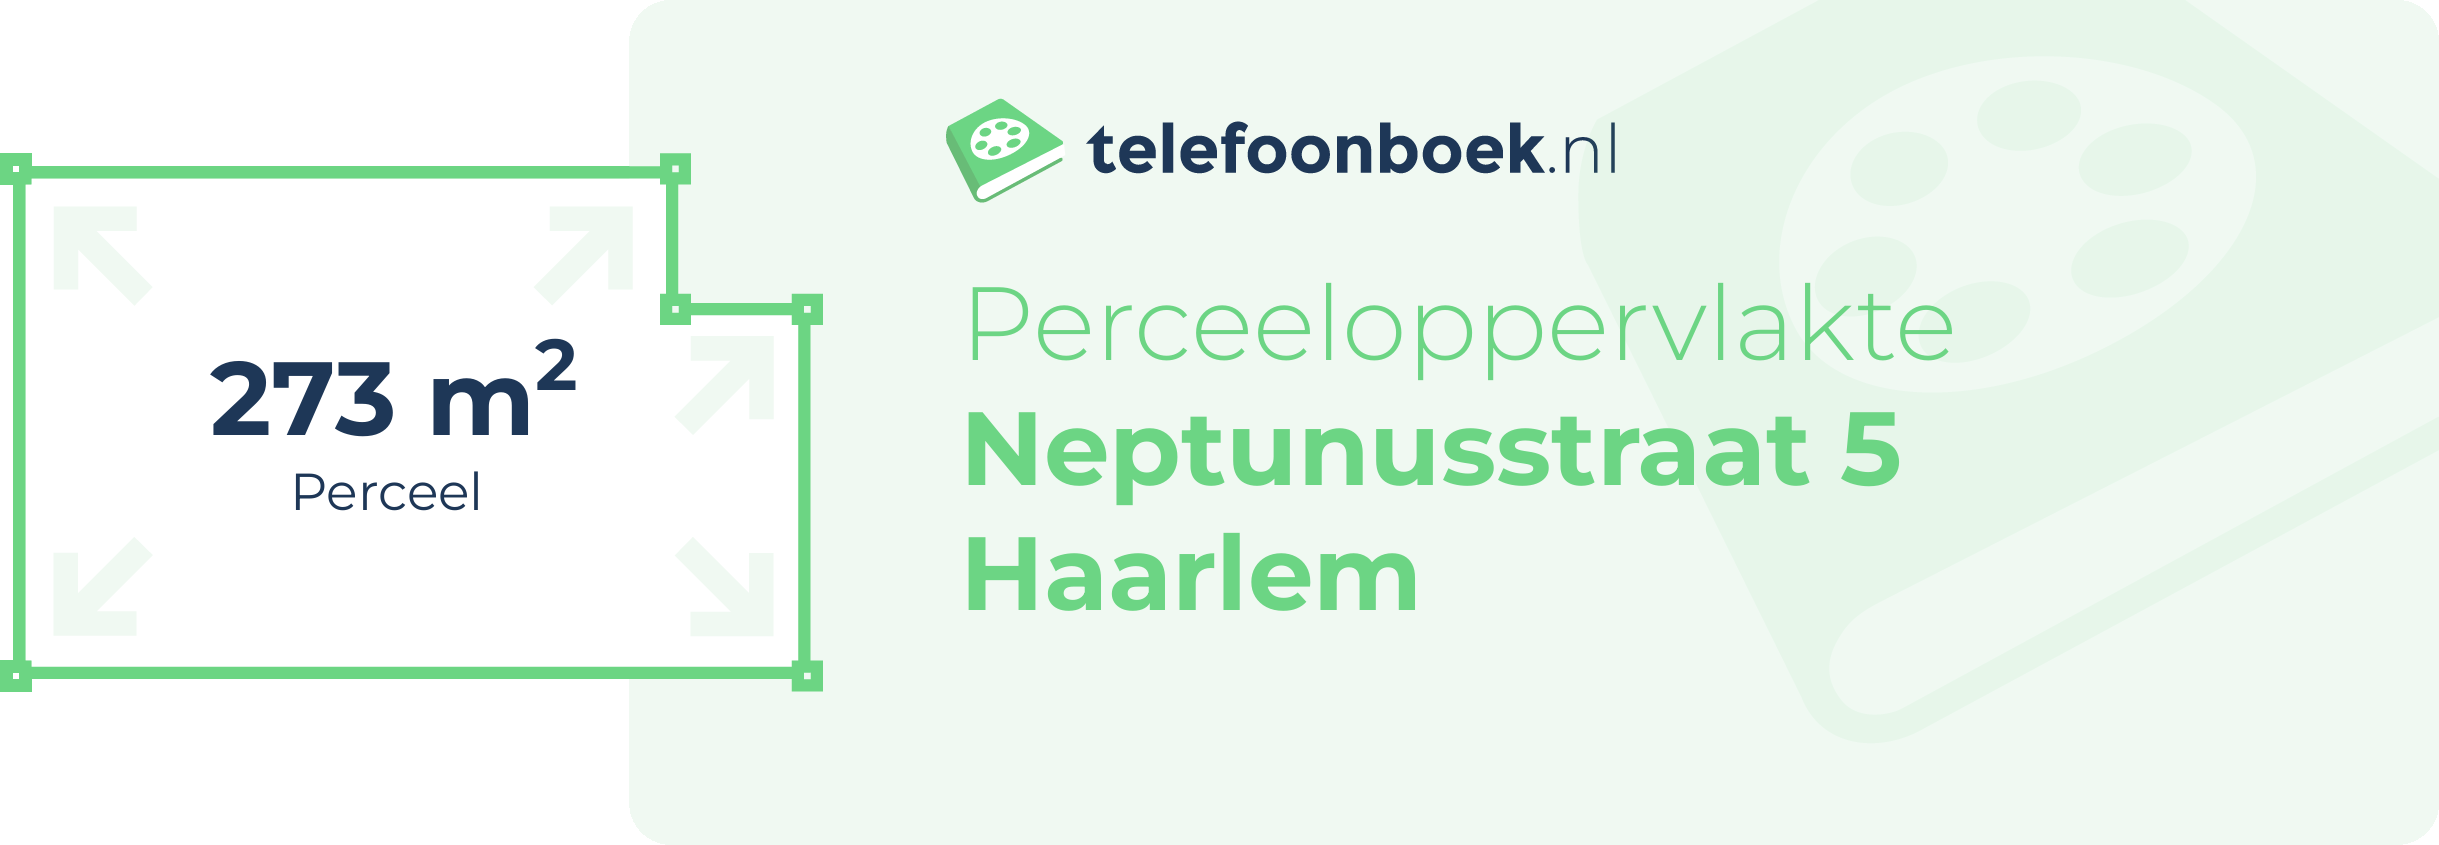 Perceeloppervlakte Neptunusstraat 5 Haarlem